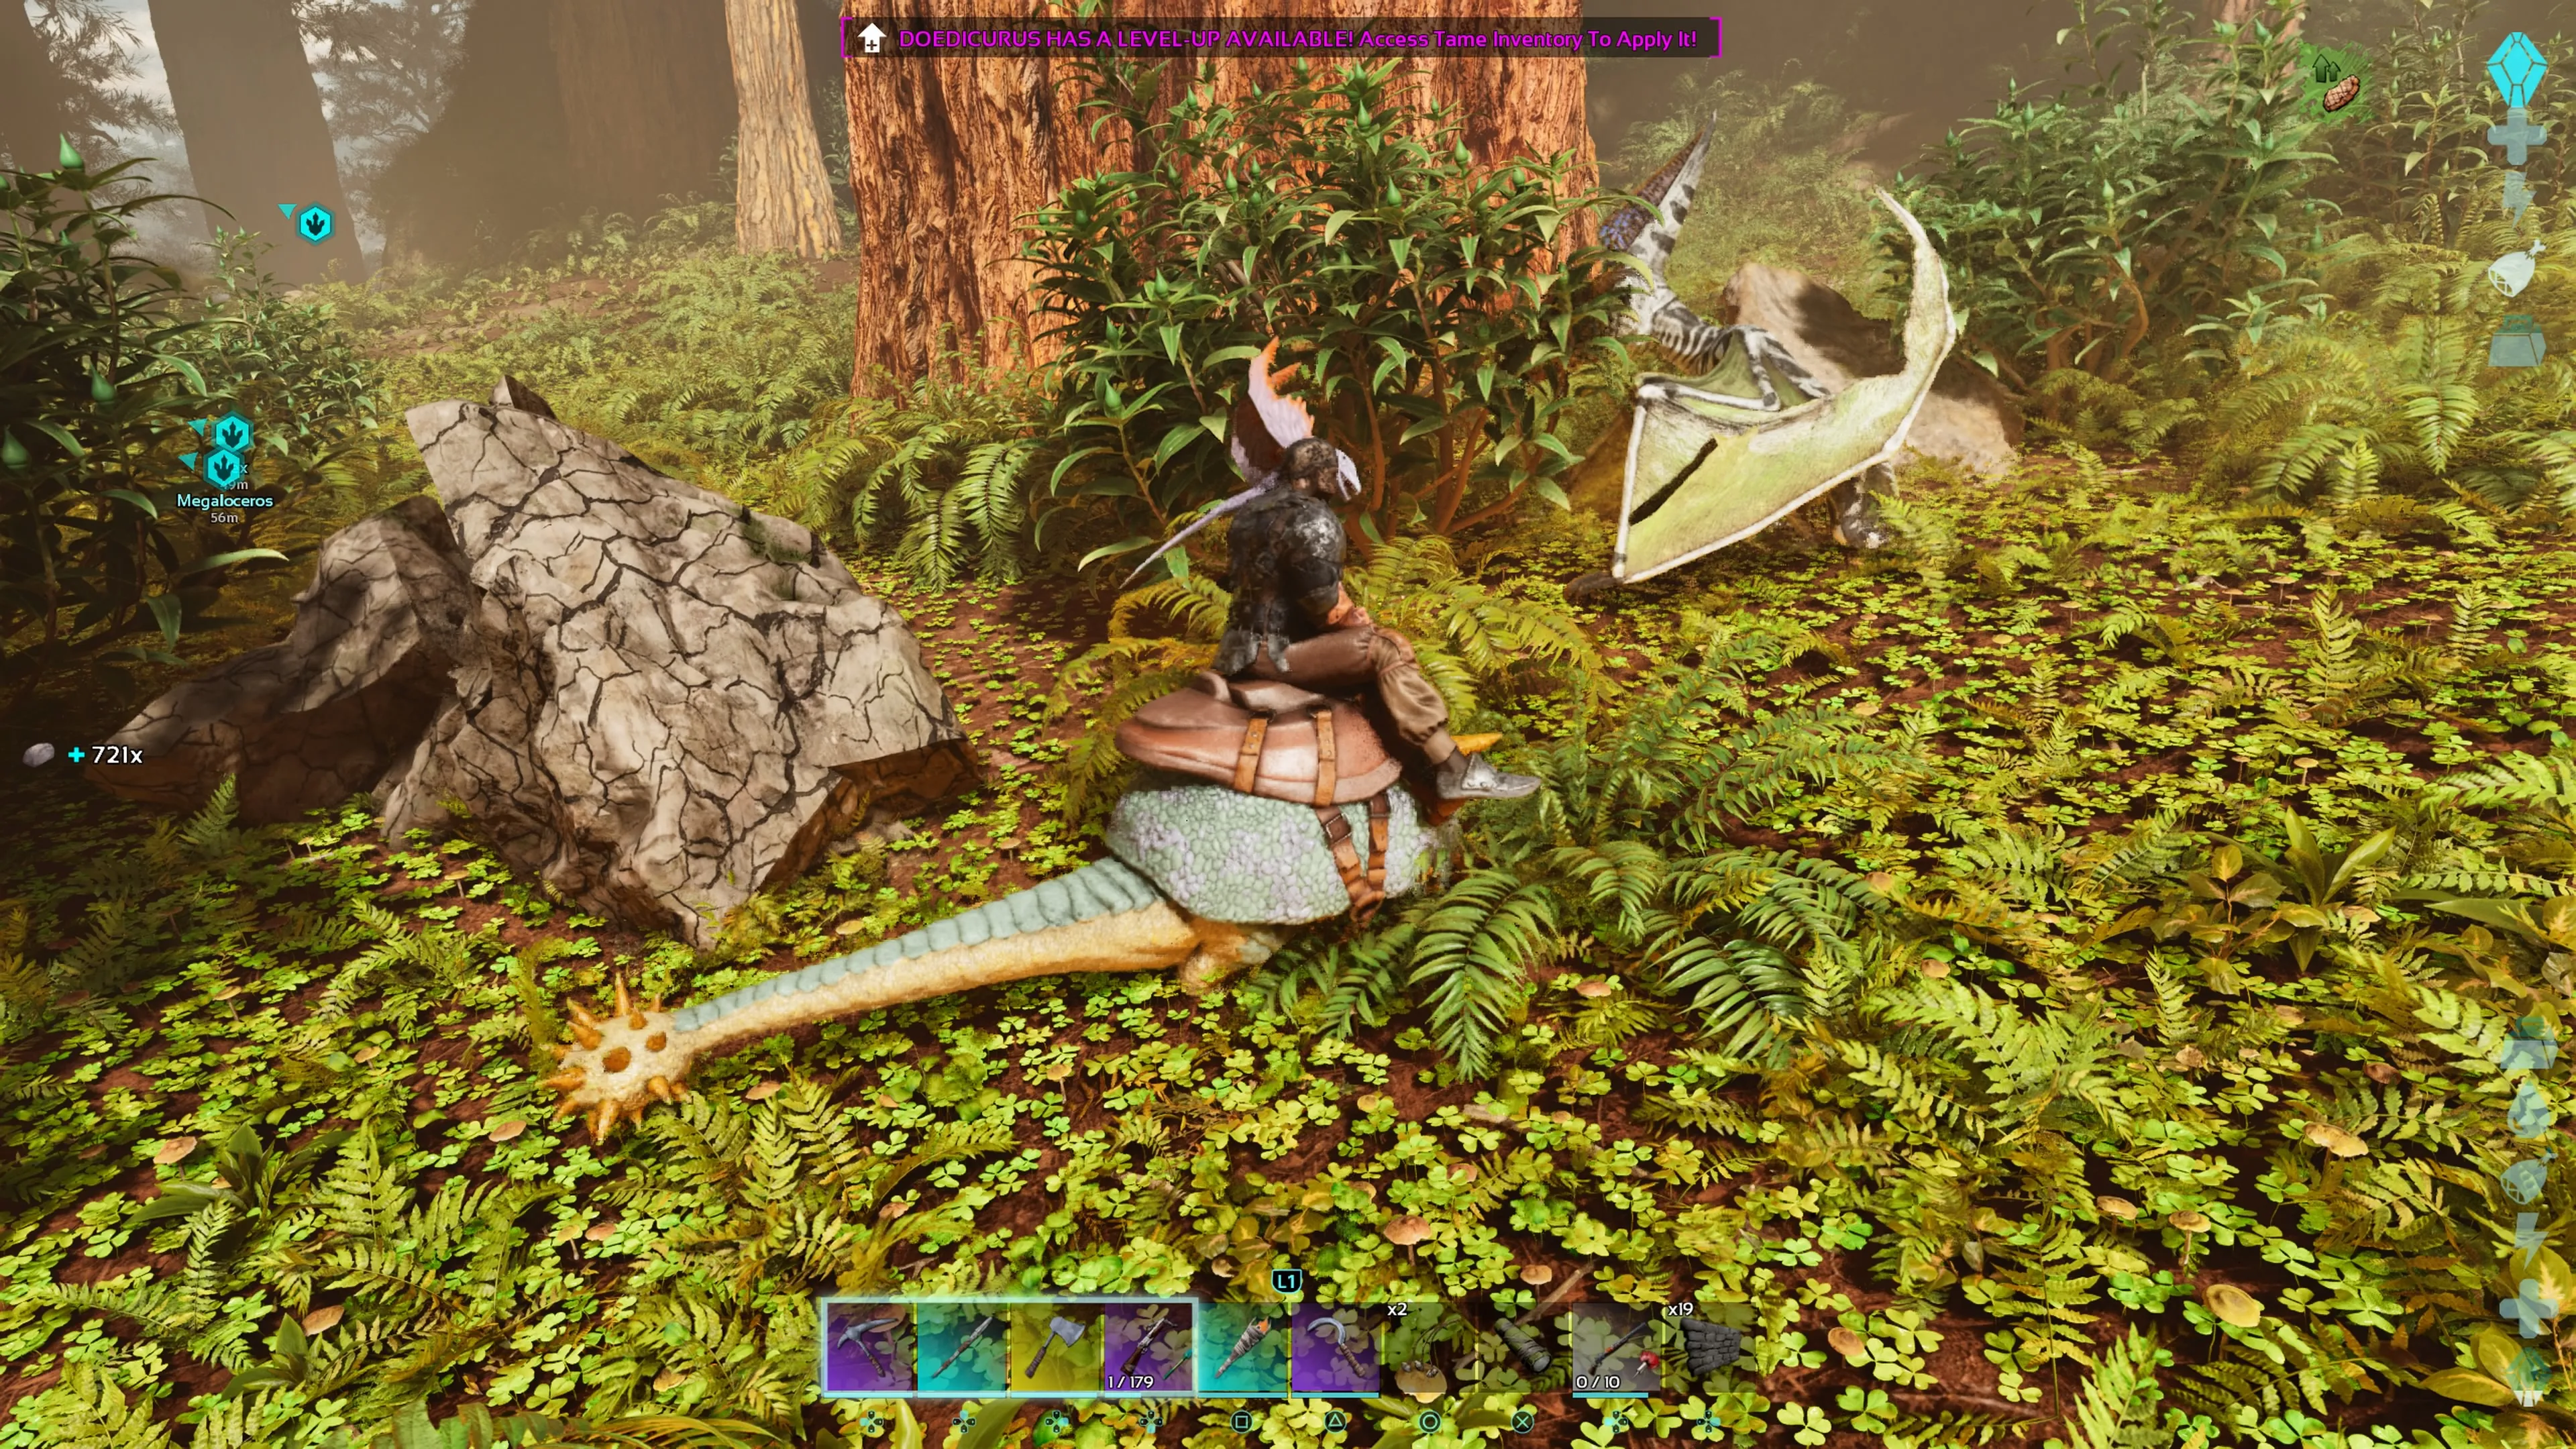 Personnage joueur avec un Dimorphodon sur l'épaule chevauchant un Doedicurus sellé et brisant un gros rocher avec dans ARK: Survival Ascended.